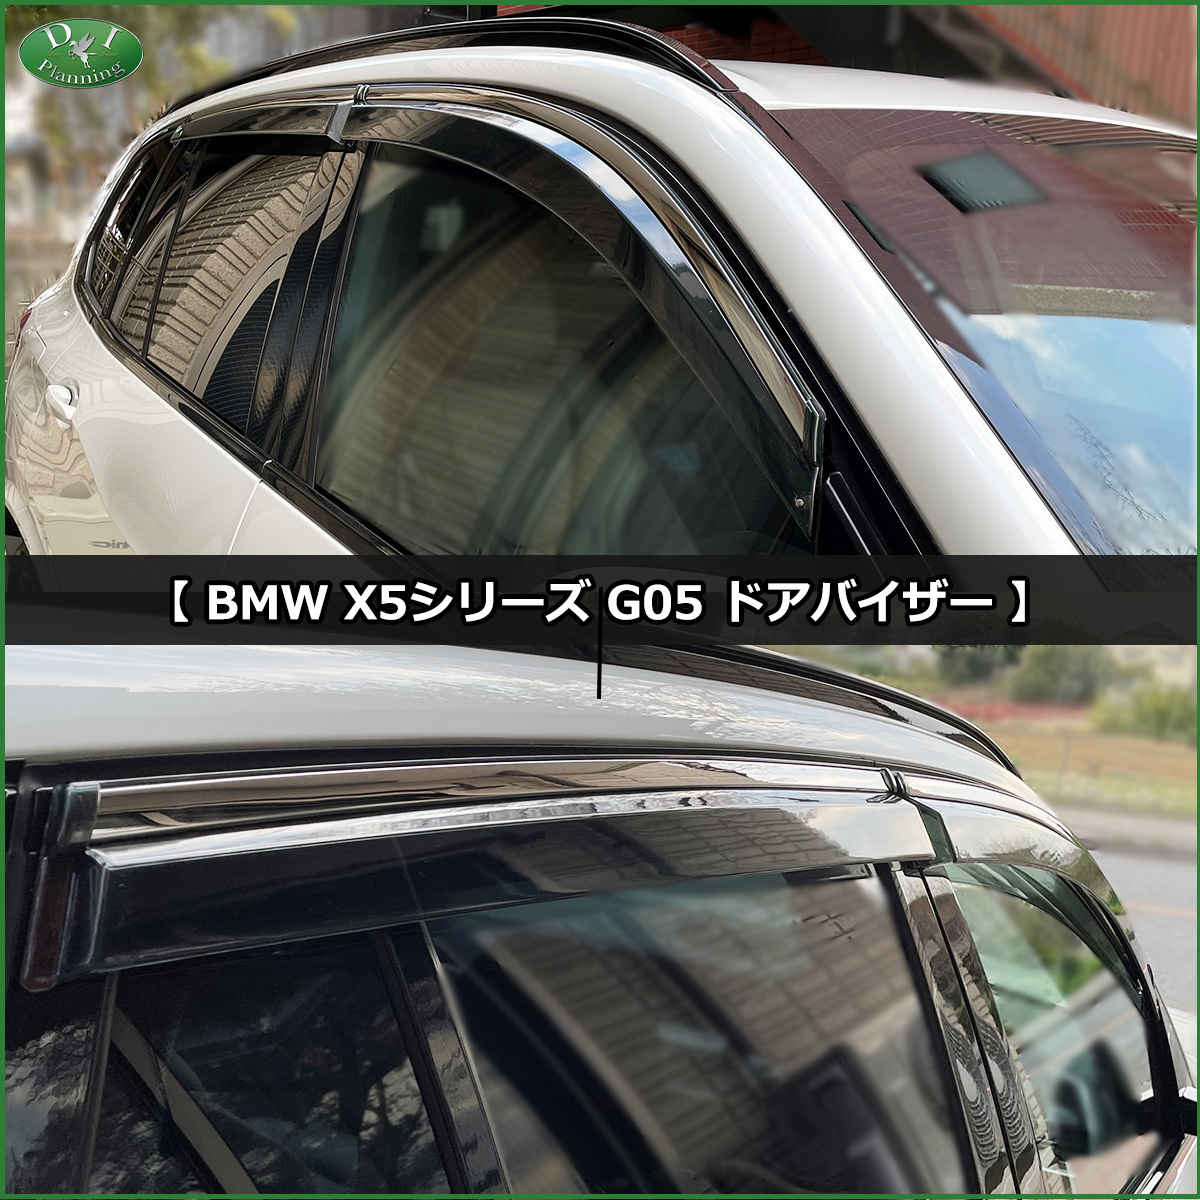 BMW X5 G05 5 посадочных мест коврик на пол & ветровик двери высококлассный под мутон норка style автомобильный коврик машина сопутствующие товары неоригинальный новый товар автомобиль коврик 